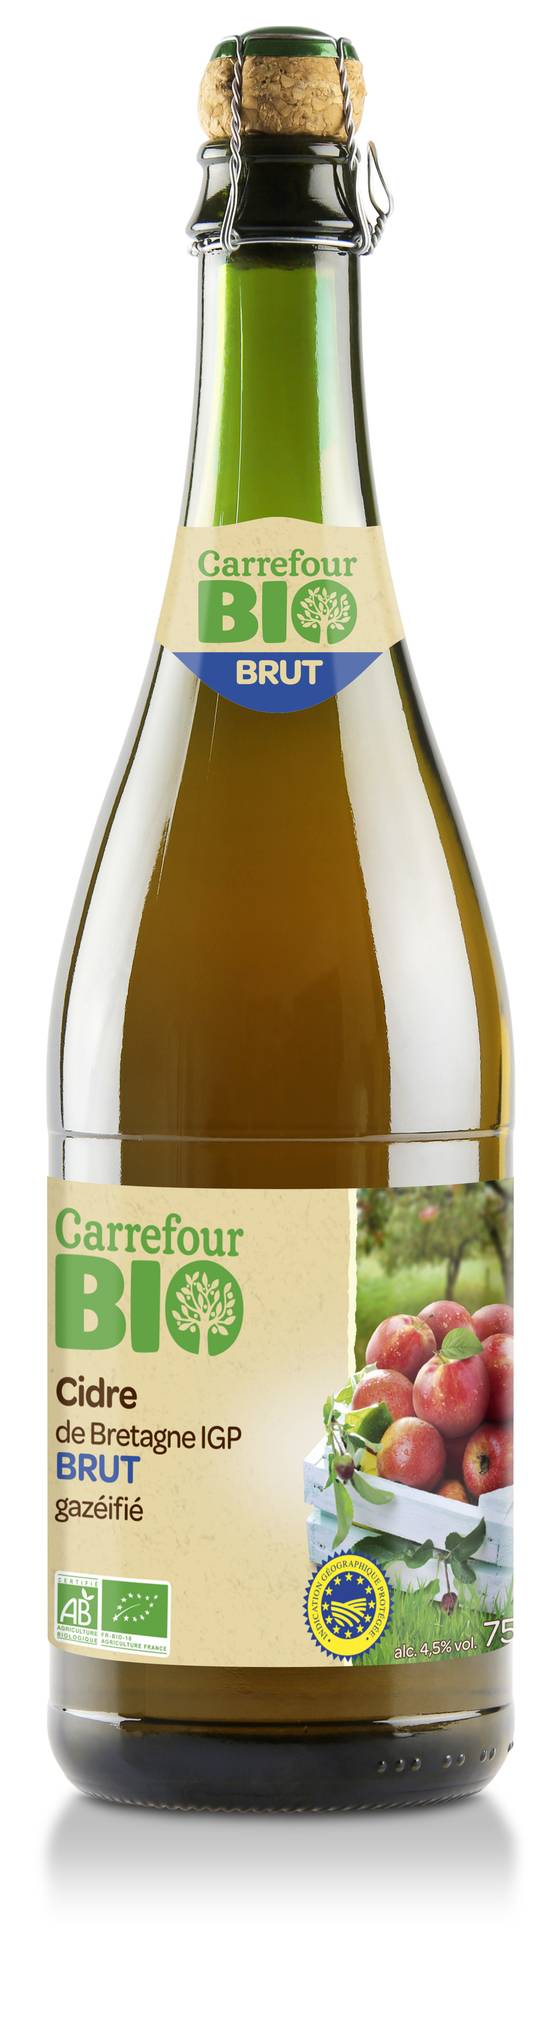 Carrefour Bio - Cidre bretagne brut IGP (750 ml)